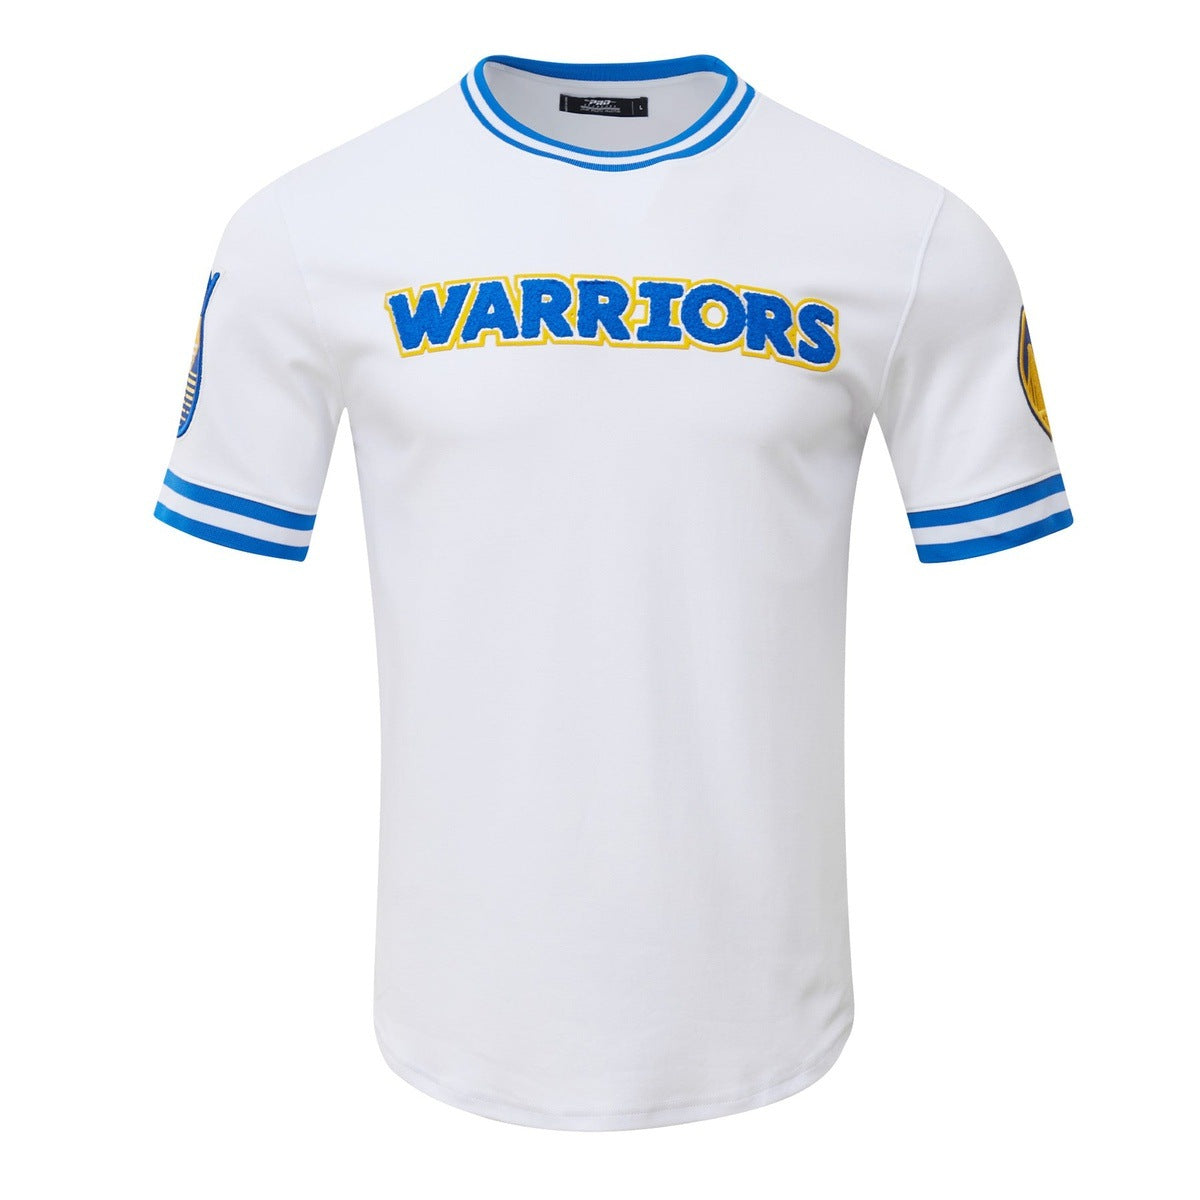 Men's Pro Standard Blue/Pink St. Louis Cardinals Ombre T-Shirt Size: Large